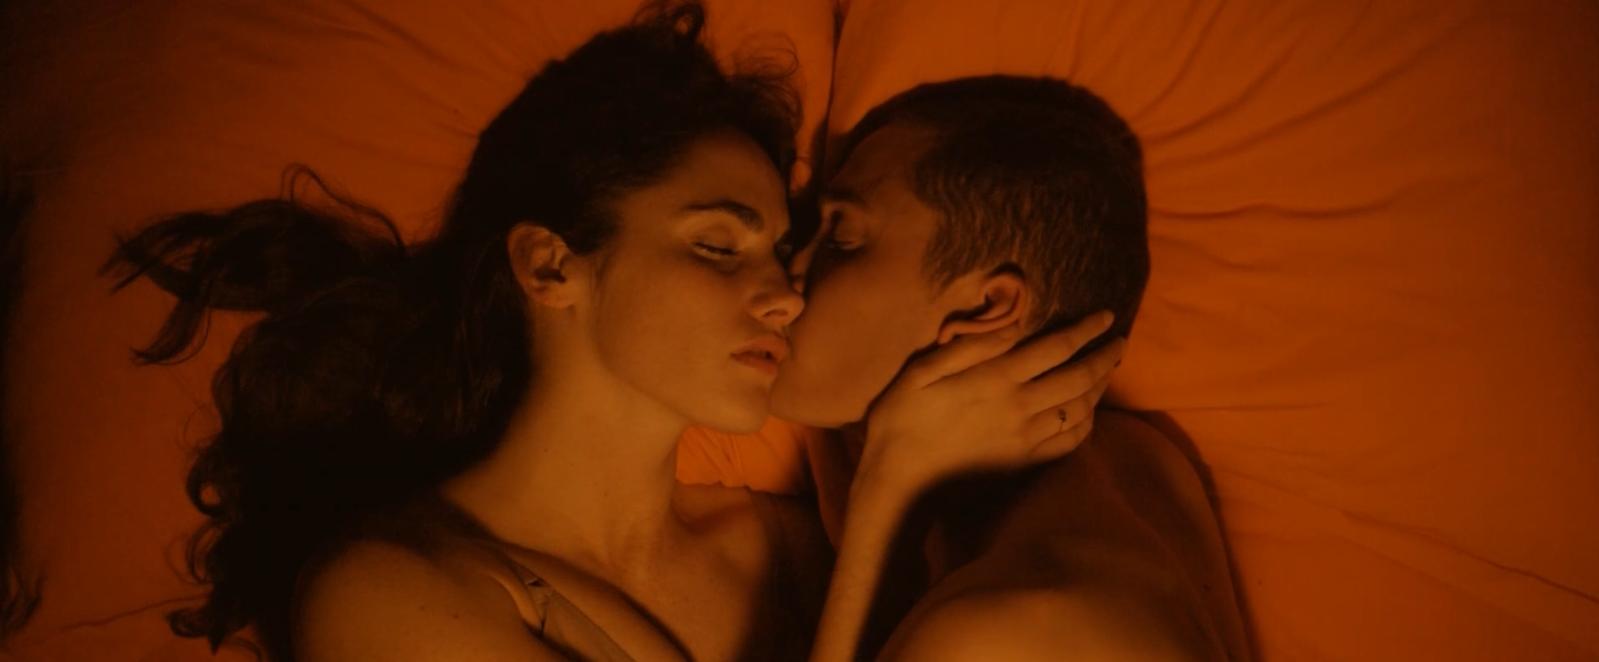 Sex scene film love